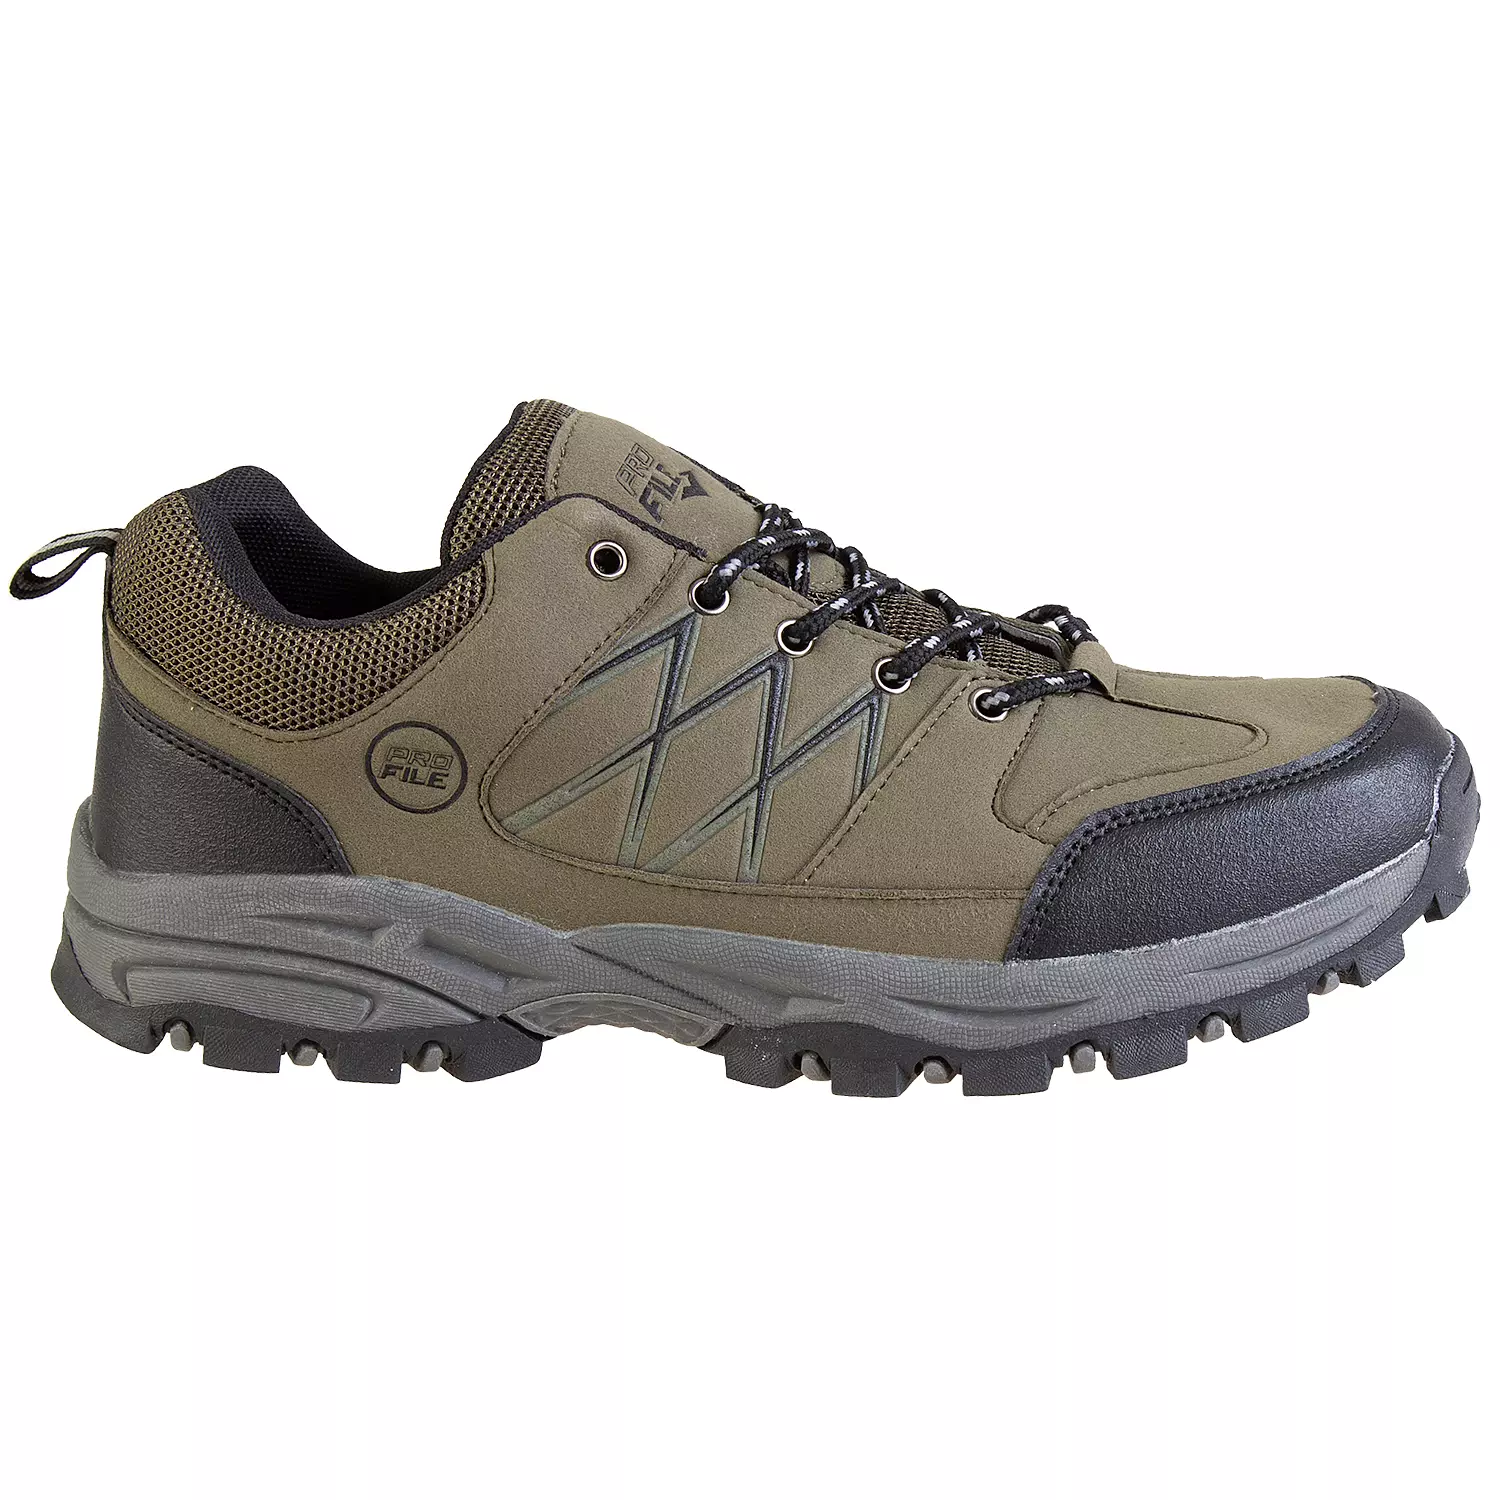 Chaussures de randonnée basses pour hommes avec bandes réfléchissantes, kaki, taille 8